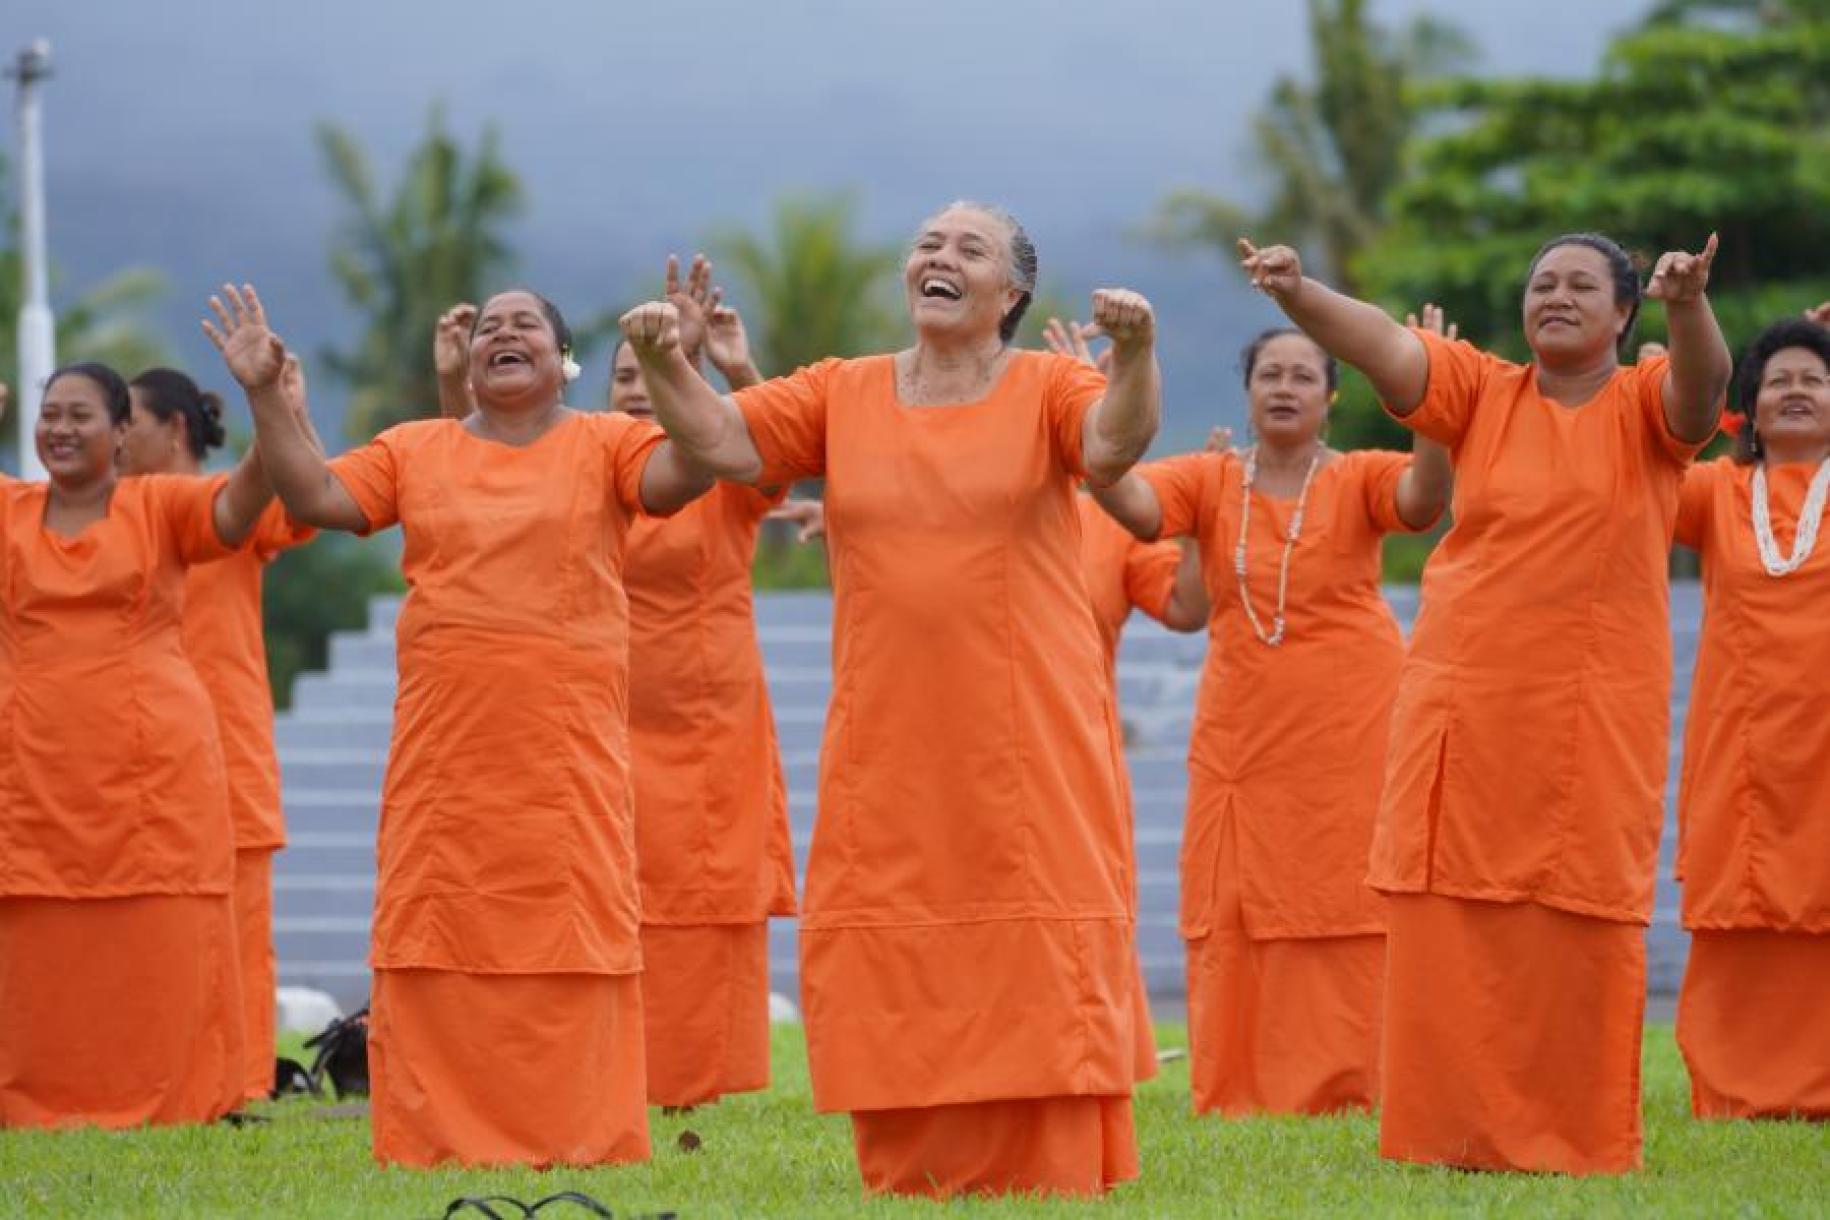 Mujeres vestidas de naranja actúan en un acto contra la violencia de género. Se encuentran en el exterior, en un jardín.